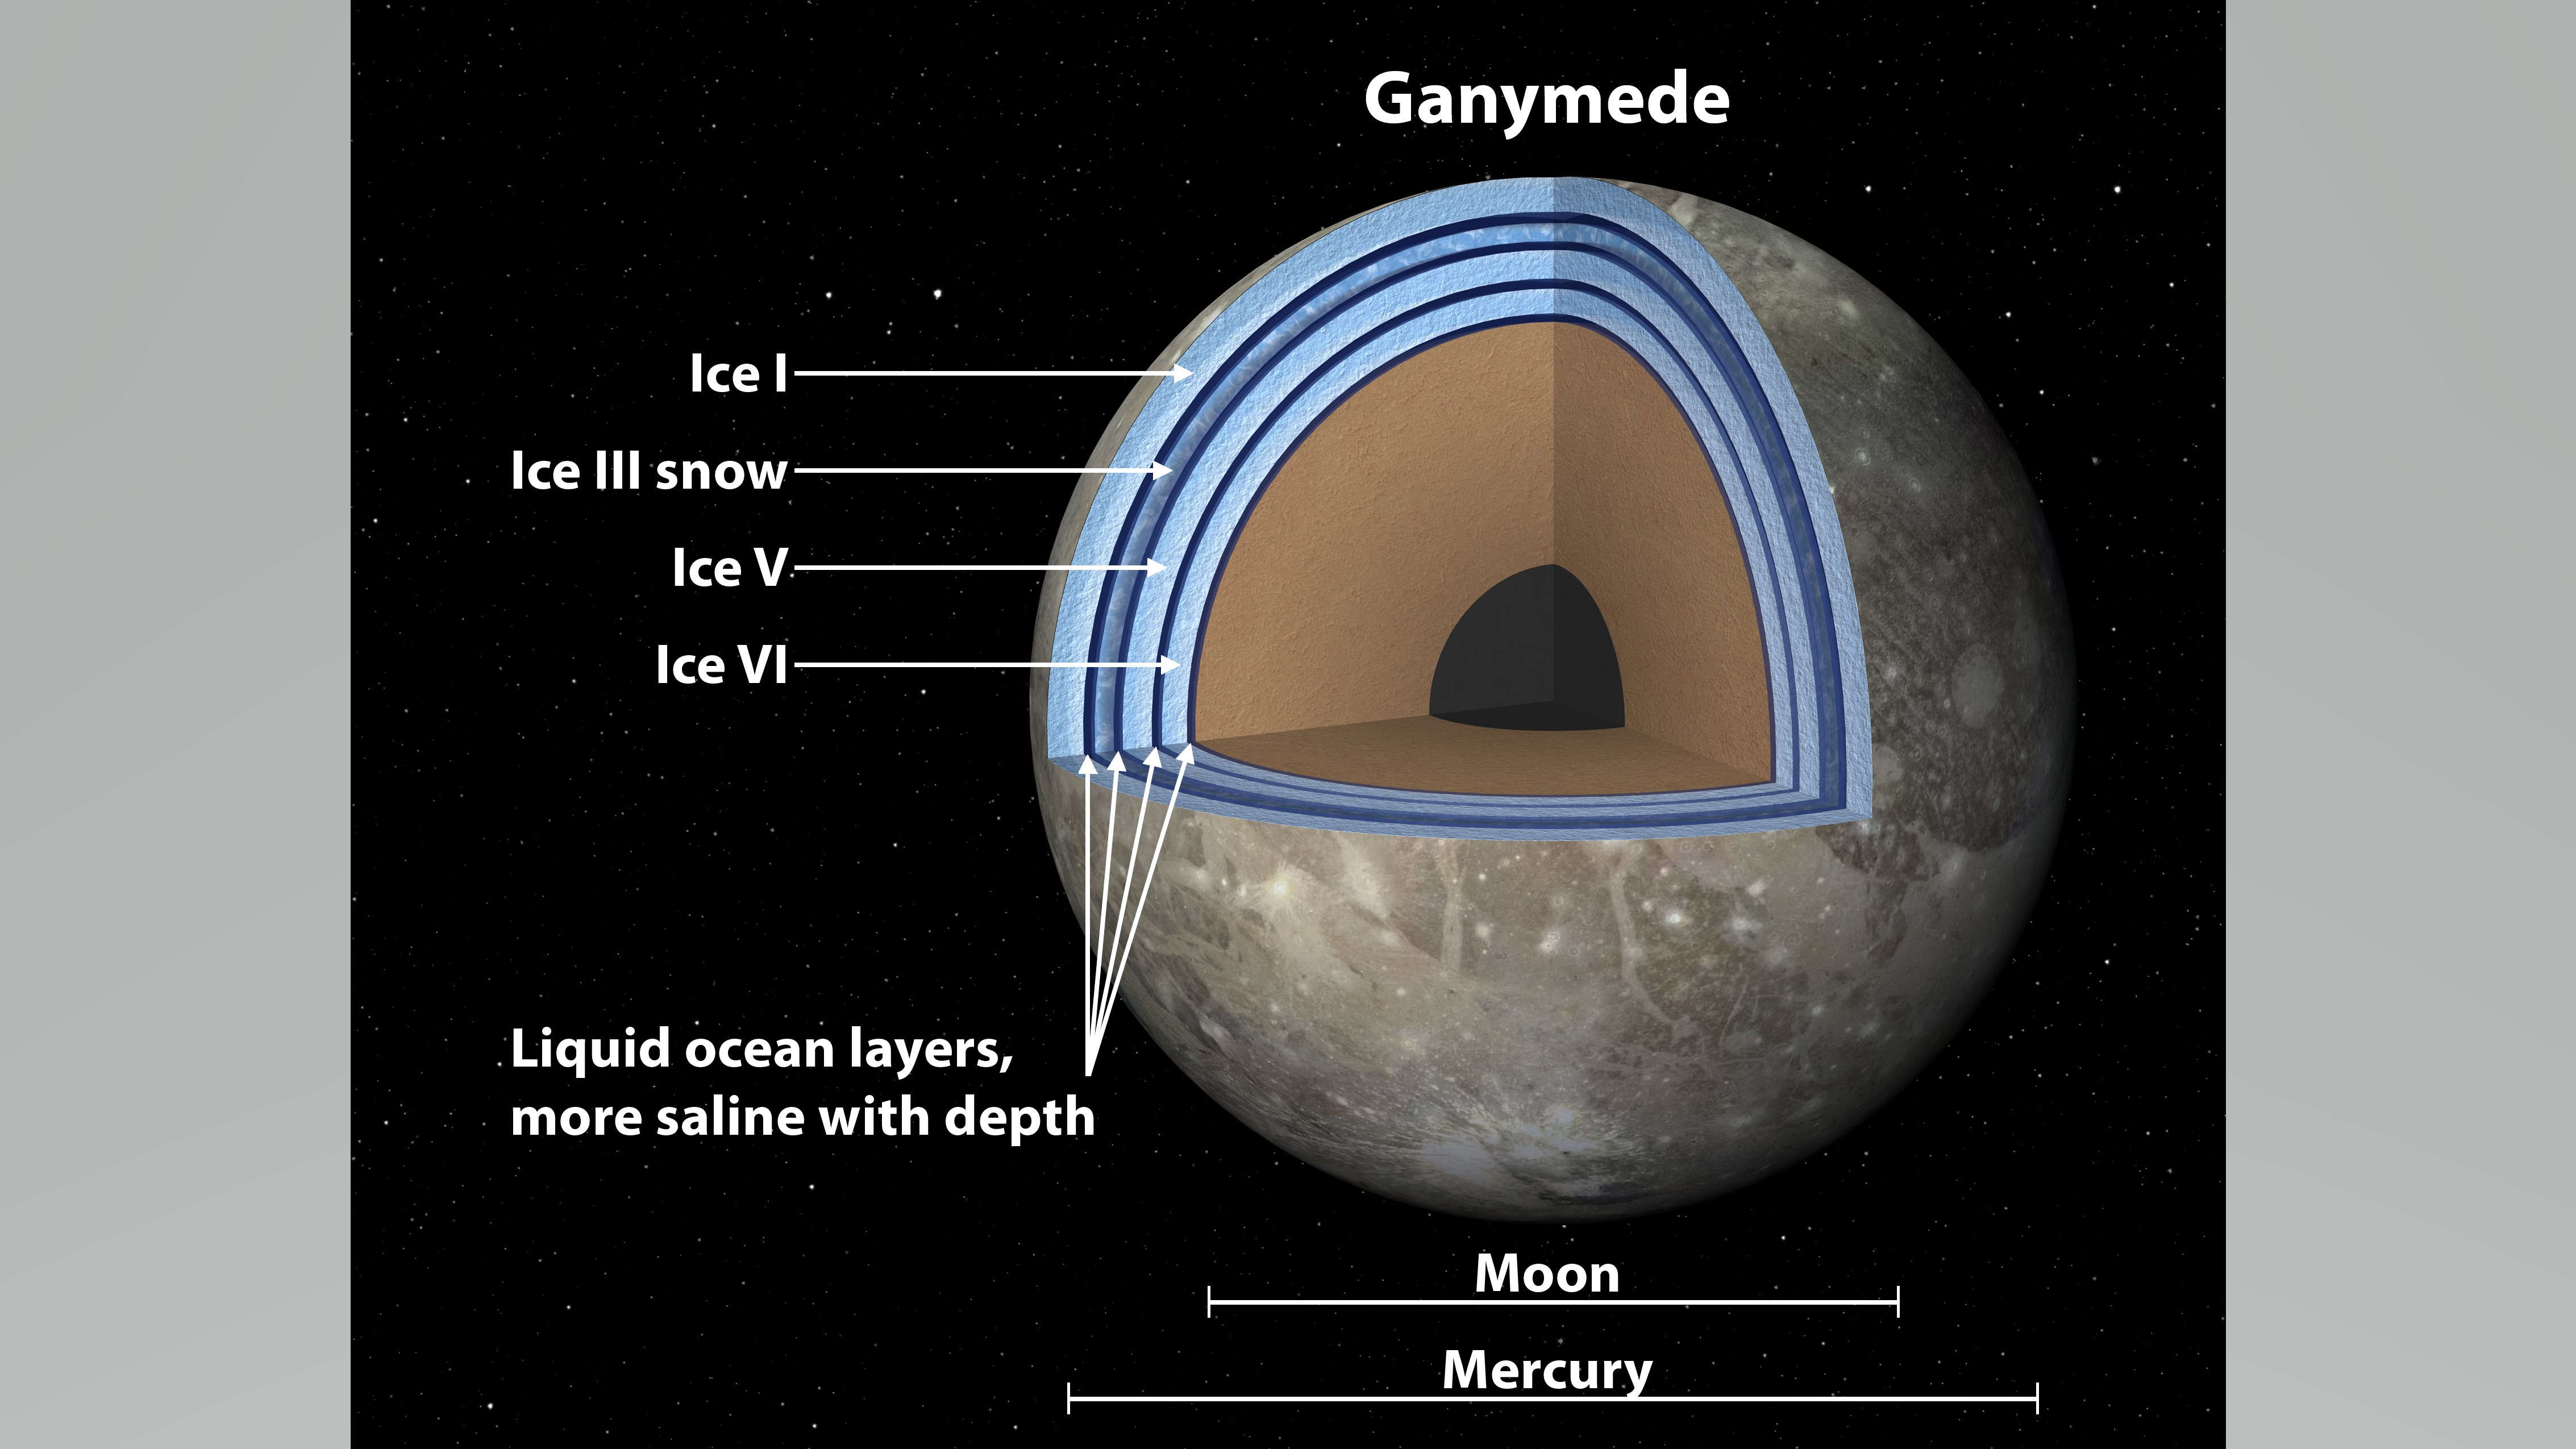 Кадр со спутника Юпитера Ганимеда, показывающий различные слои льда высокого давления внутри.